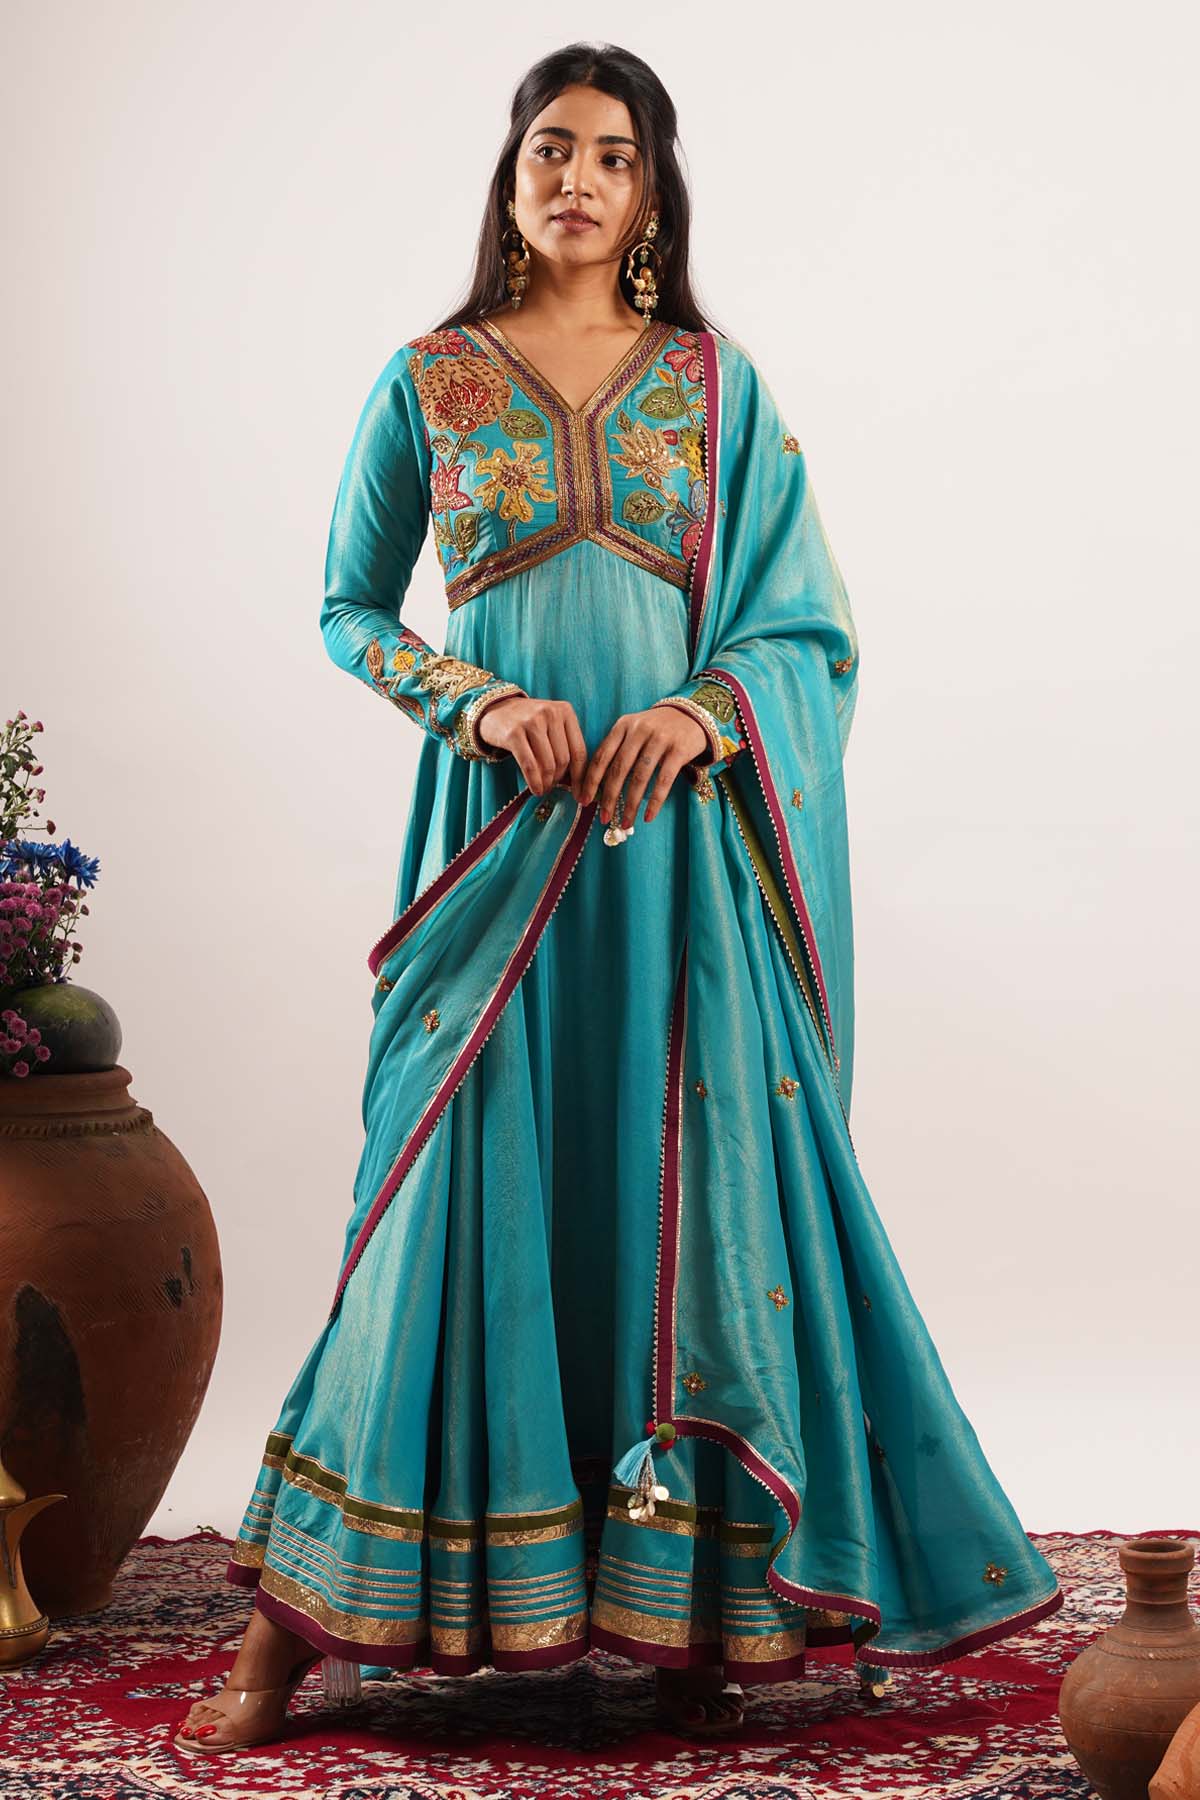 Seharre Embroidered Blue Anarkali Set for women online at ScrollnShops